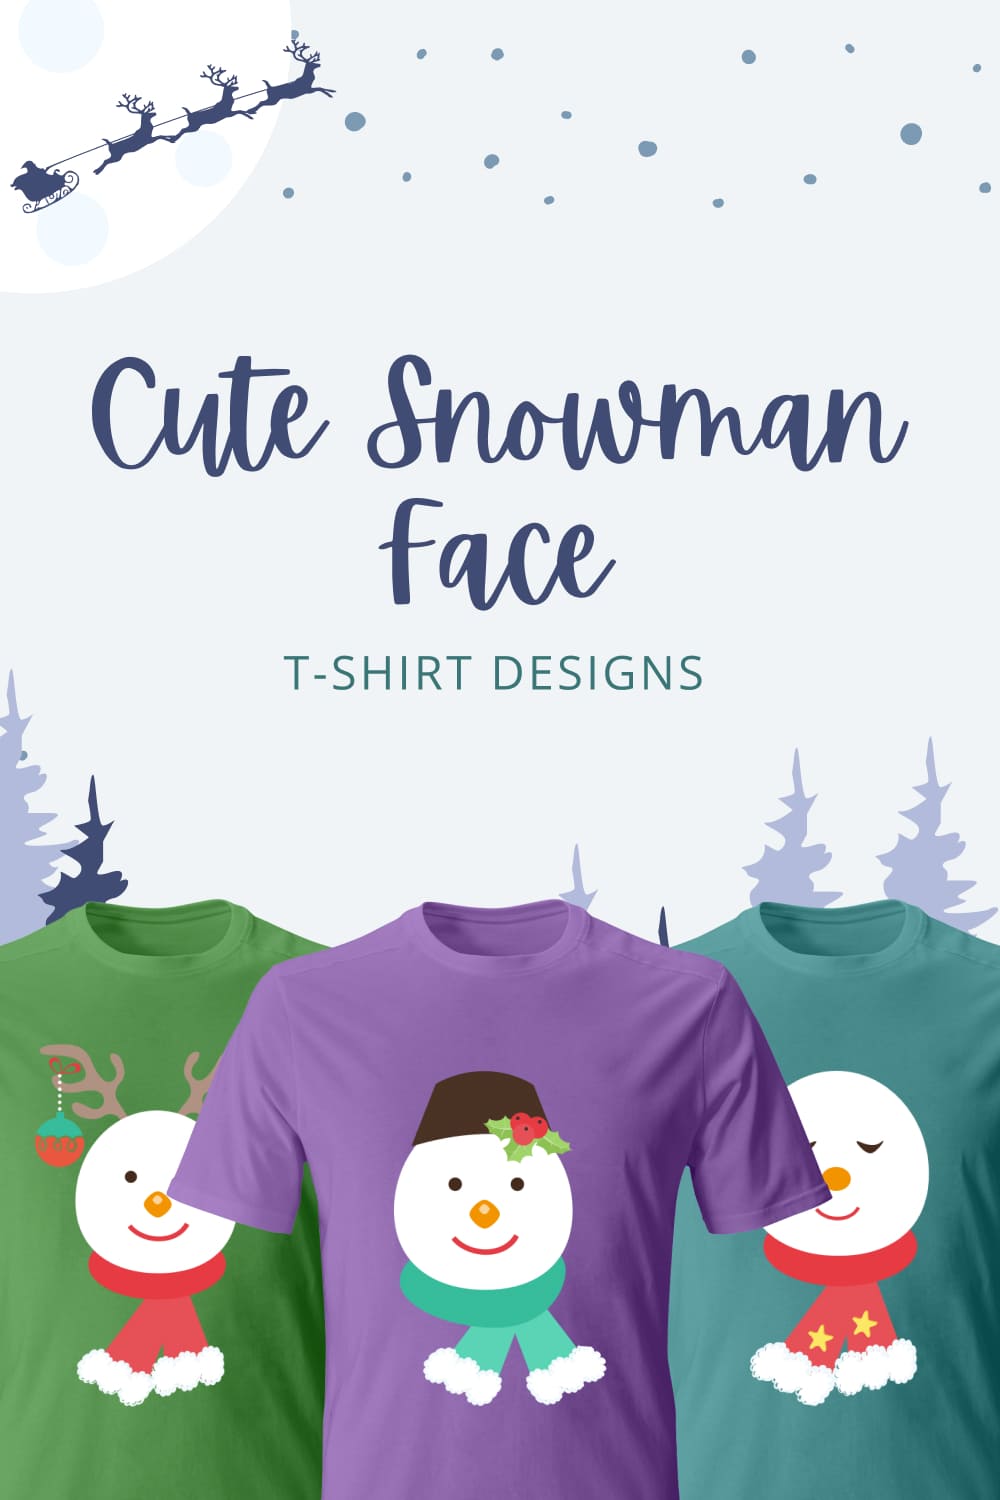 cute snowman face t shirt designs 03 806